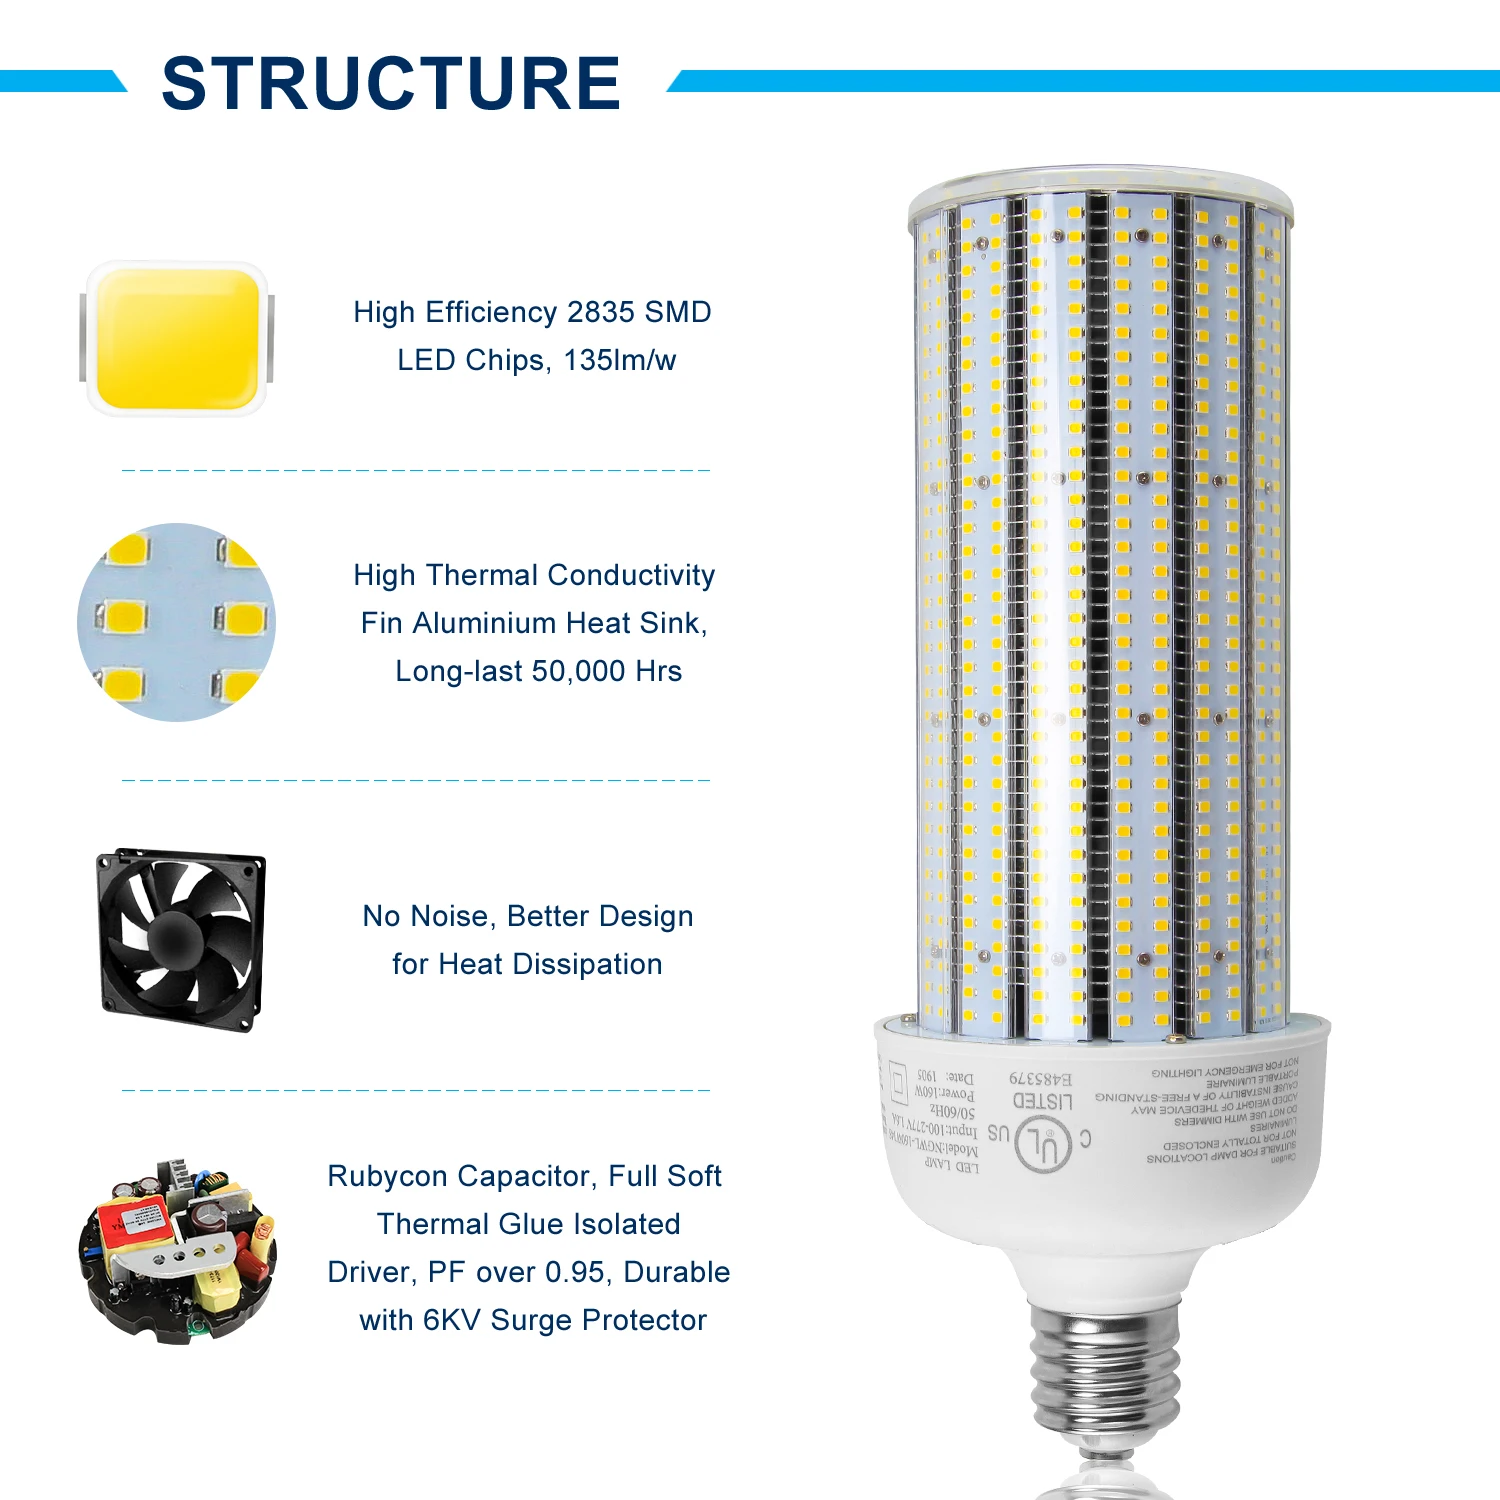 CUL E39 mogul lampu bohlam led AC 120V, lampu Halide logam lampu led bohlam gudang 160w